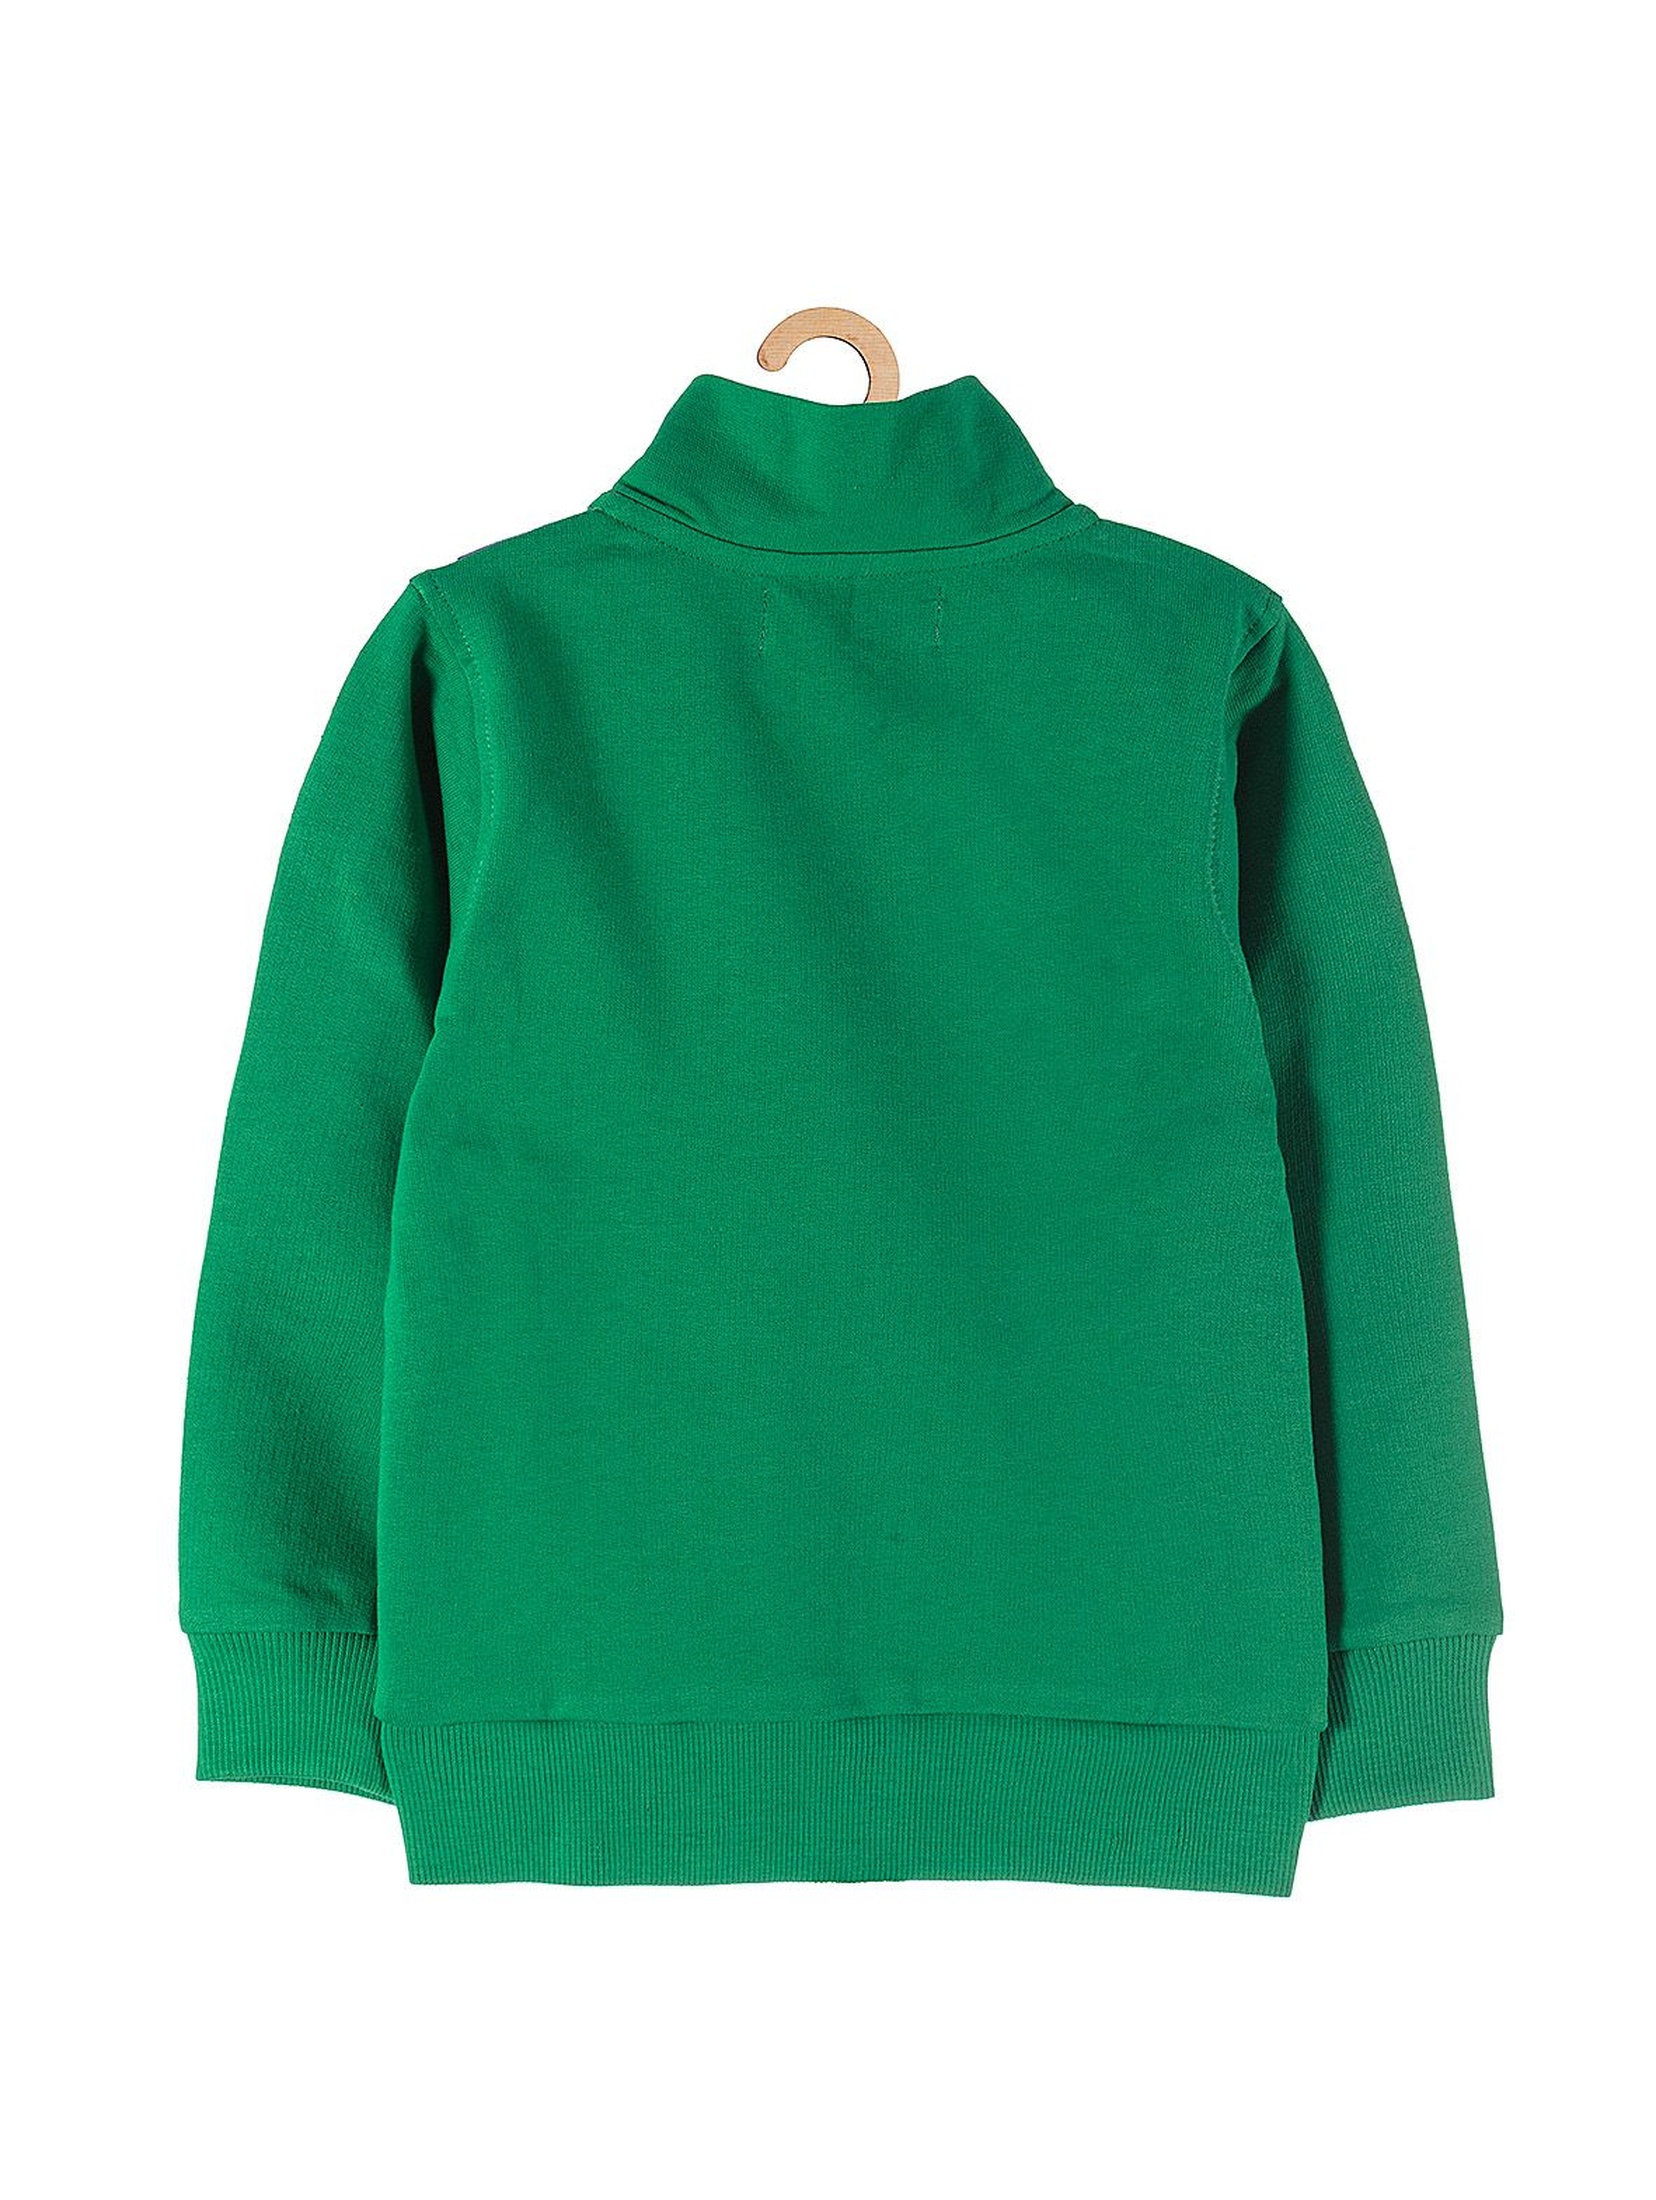 Bluza dresowa dla chłopca rozpinana z kieszeniami- zielona